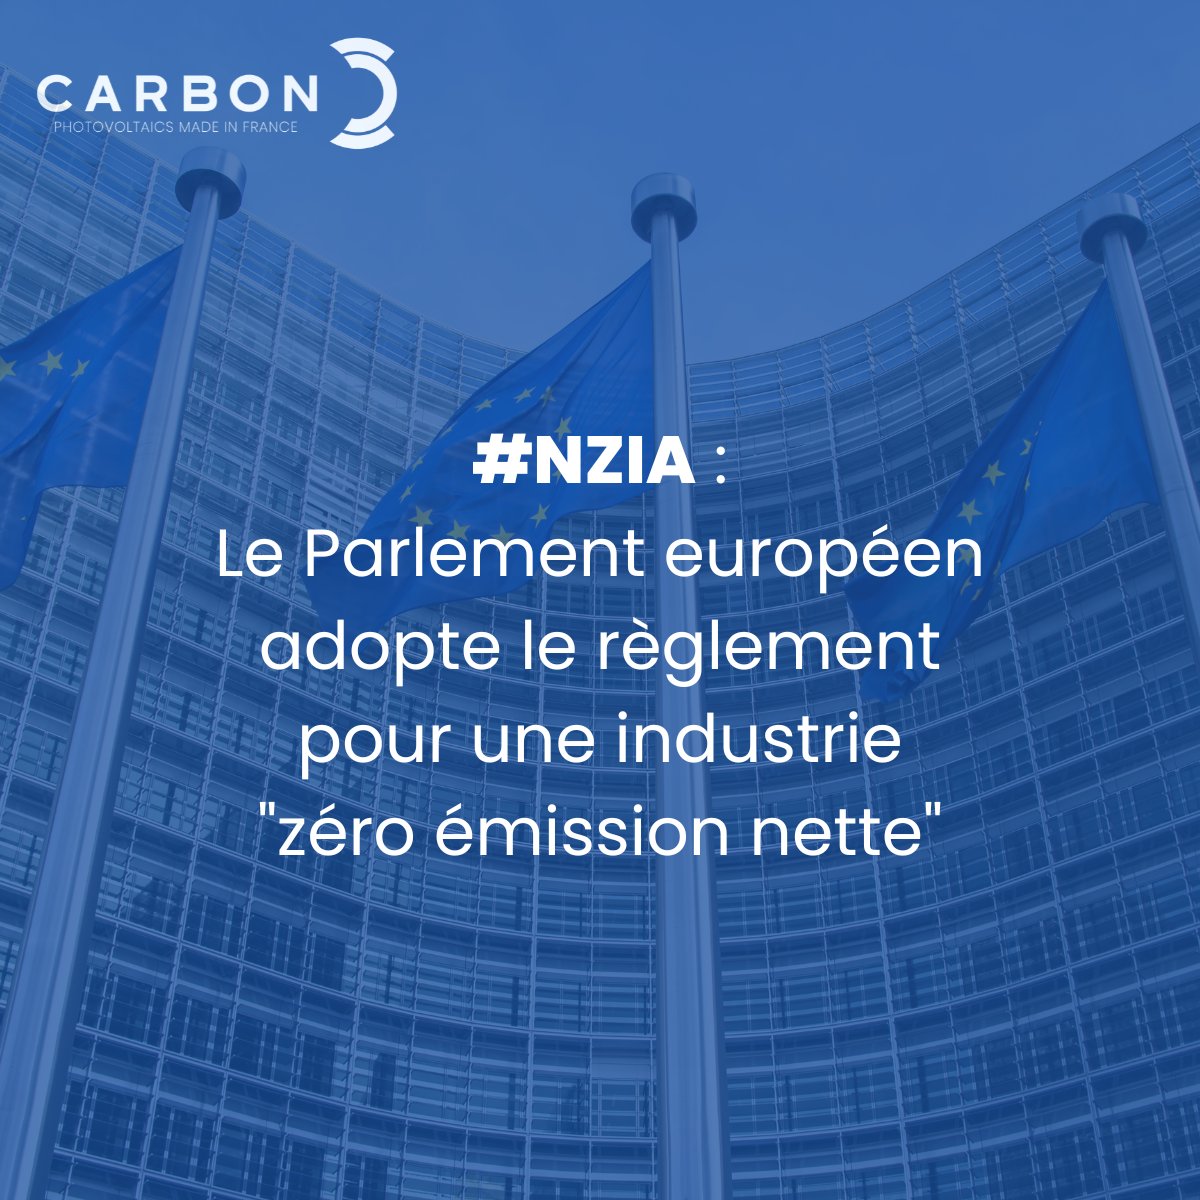 Bonne nouvelle du côté de l'Europe ! 🇪🇺 🌞

Ce jeudi, le Parlement européen a adopté le règlement pour une industrie 'zéro émission nette' ! #NZIA 🏭⚡️☀️🌱